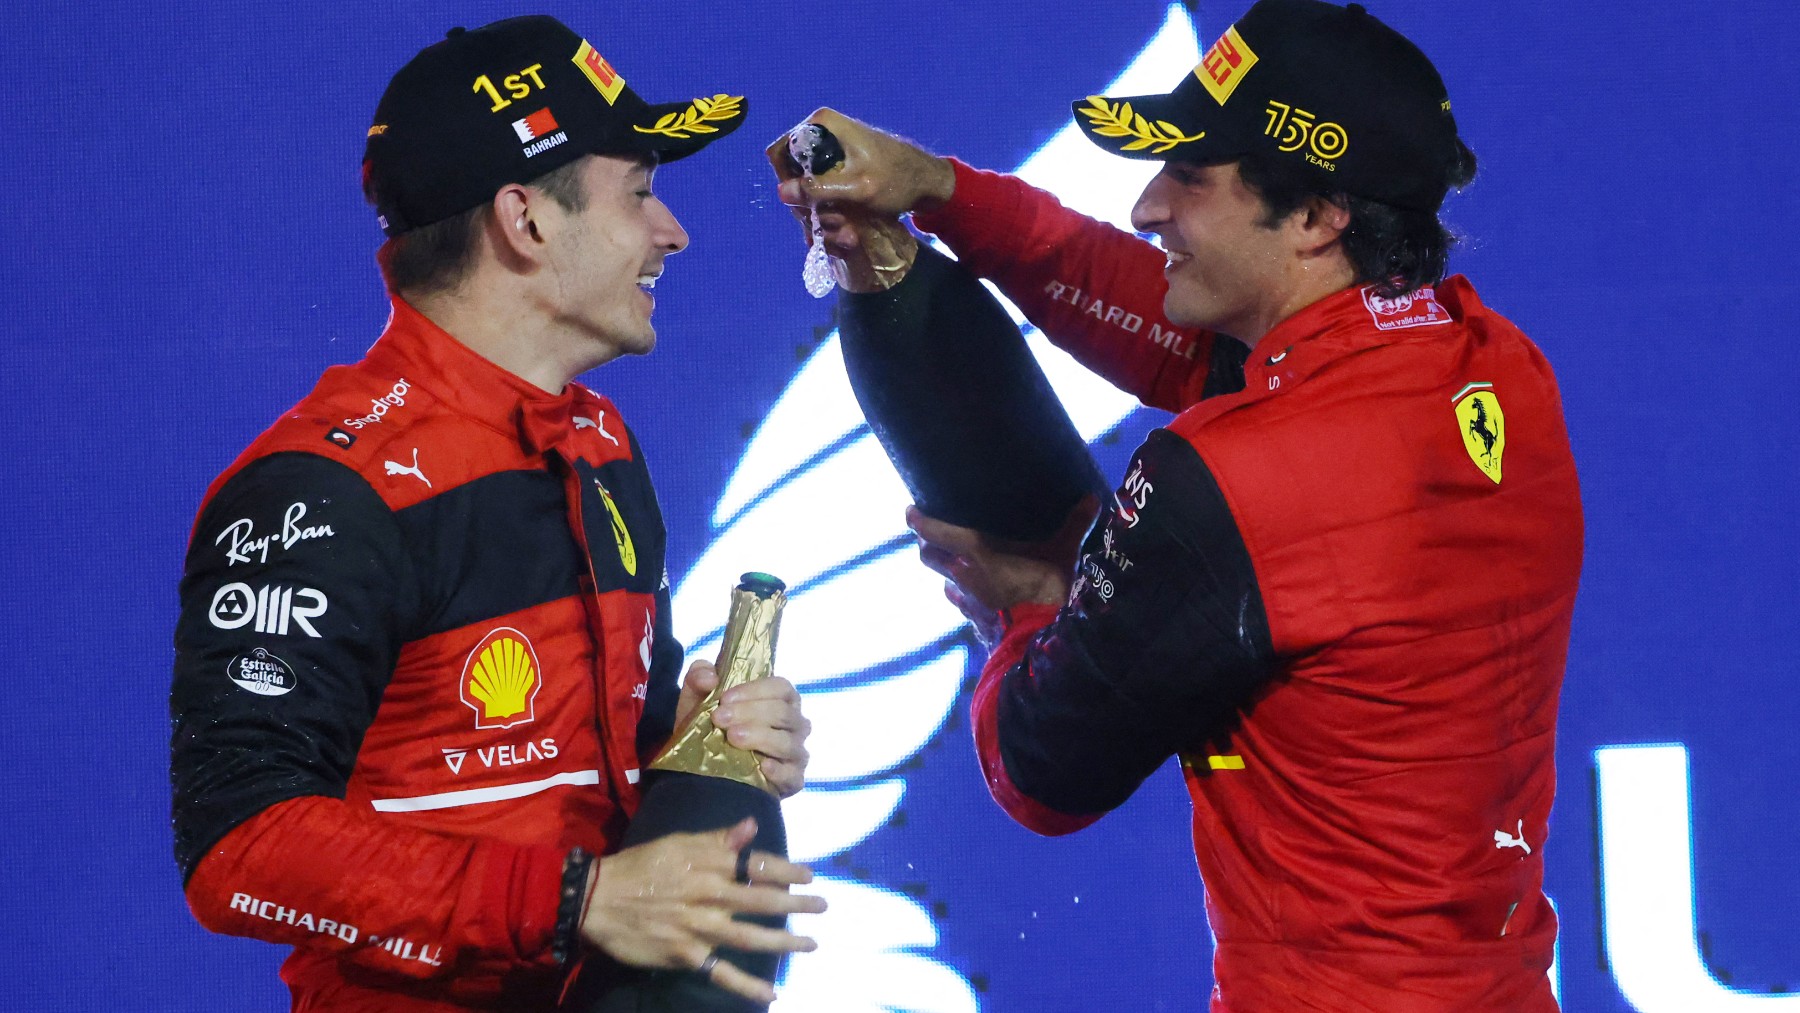 Carlos Sainz da champán a su compañero Leclerc en el podio. (AFP)